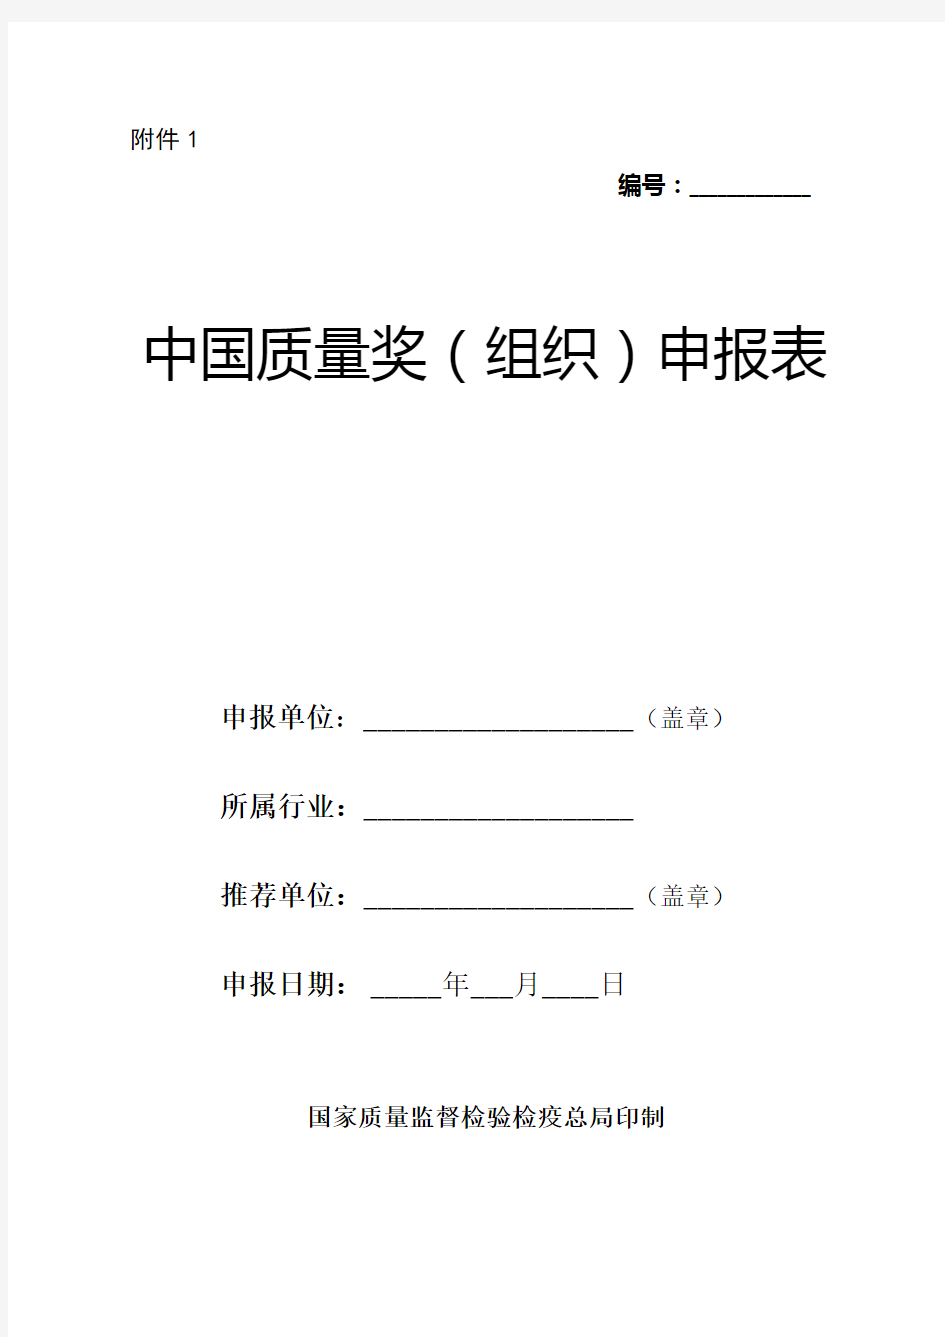 中国质量奖(组织)申报表(doc 28页)